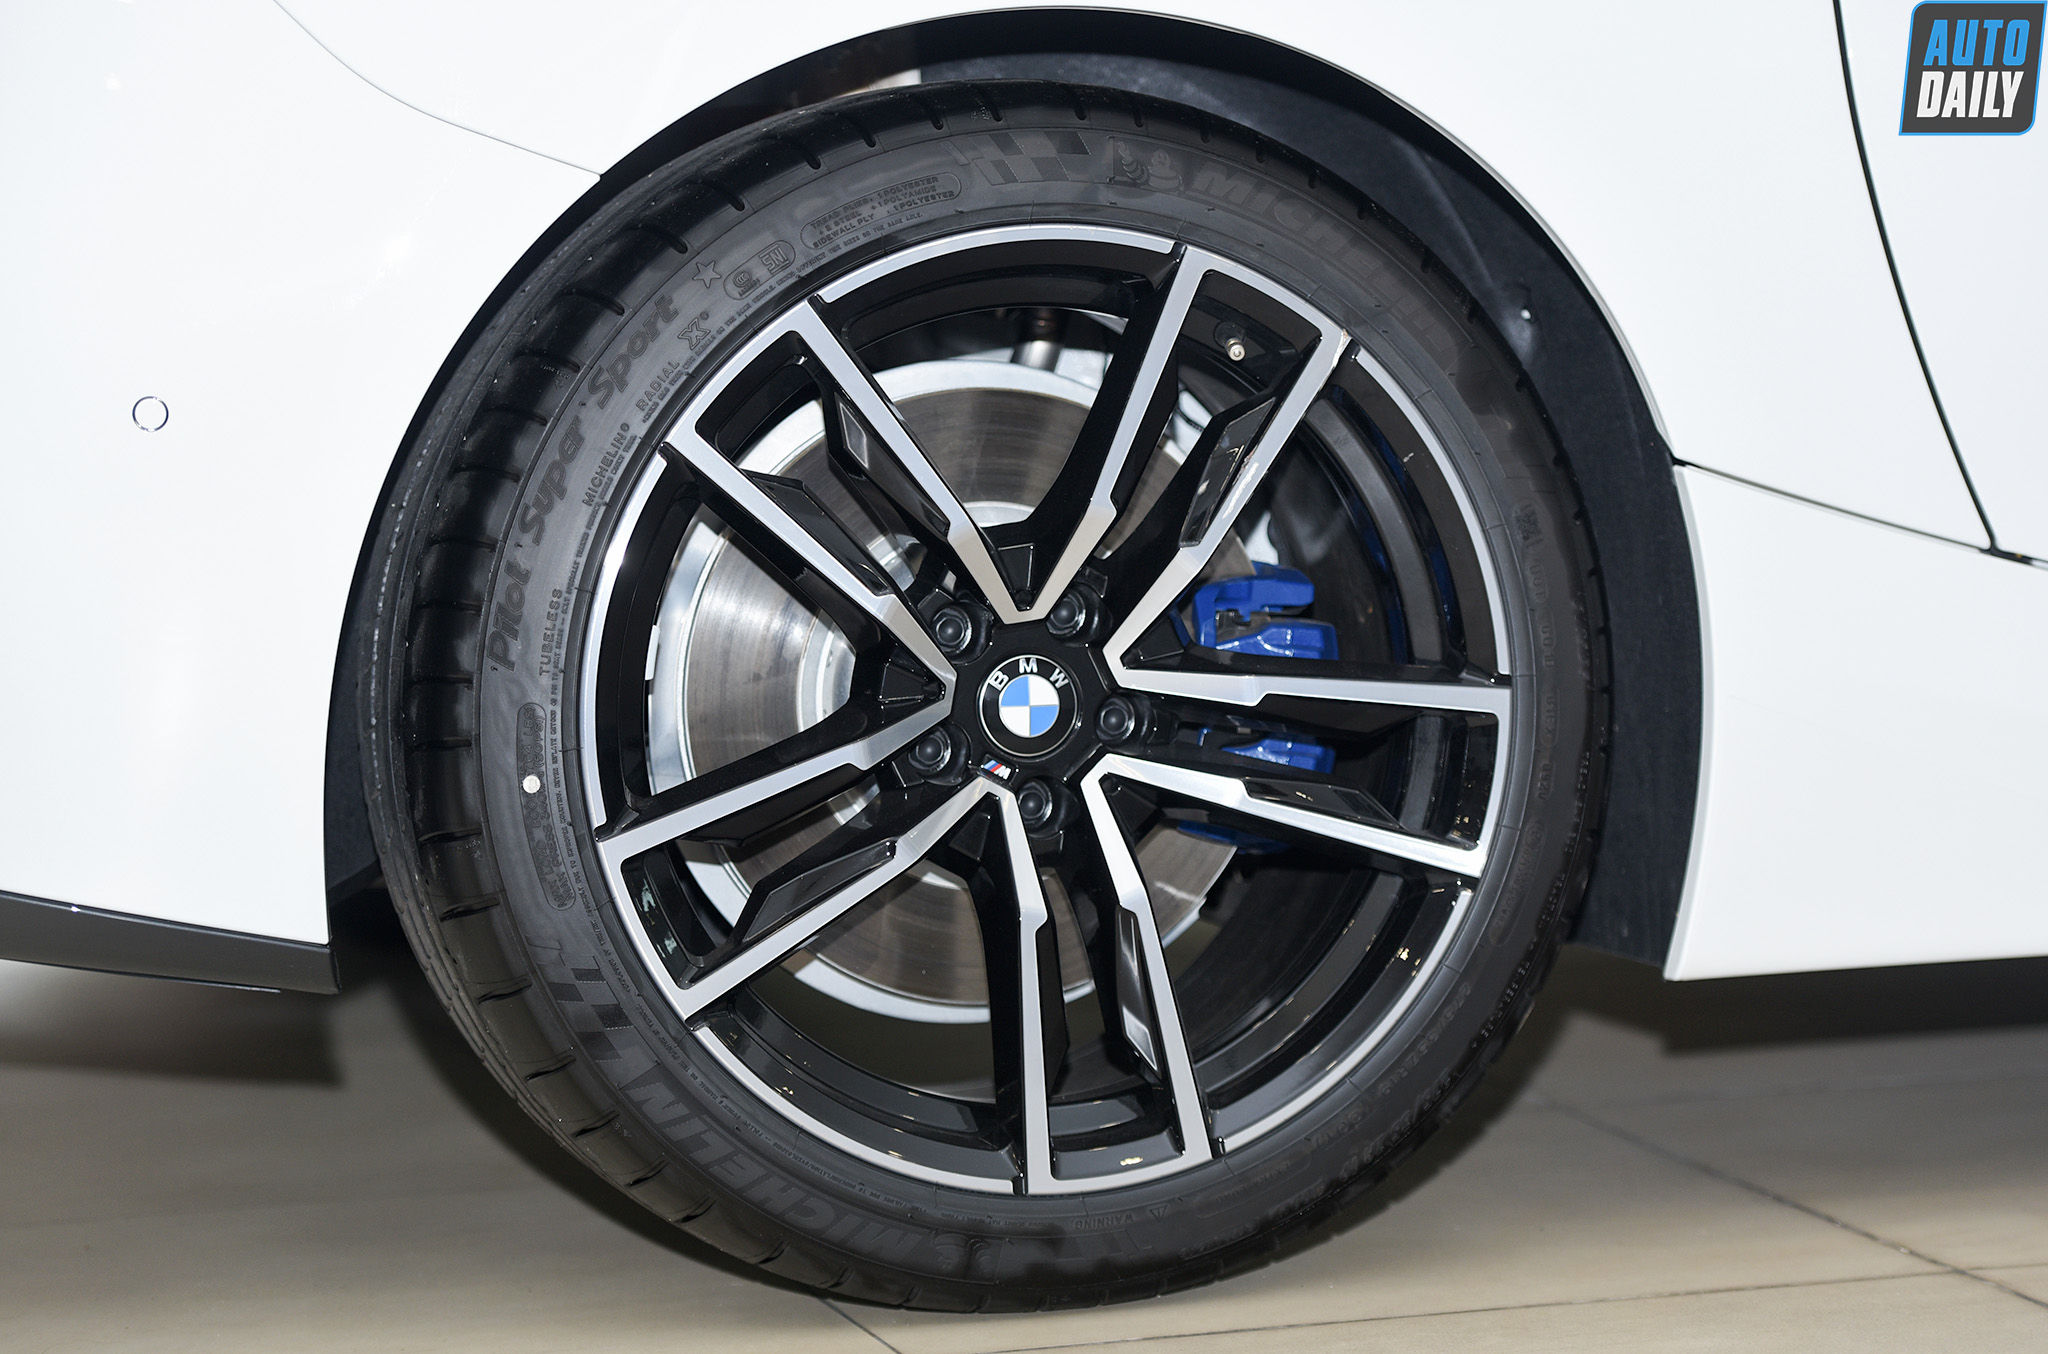 Cận cảnh BMW Z4 hoàn toàn mới tại Việt Nam: Xe mui trần thể thao 2 chỗ đầy thú vị bmw-z4-2021-011.jpg